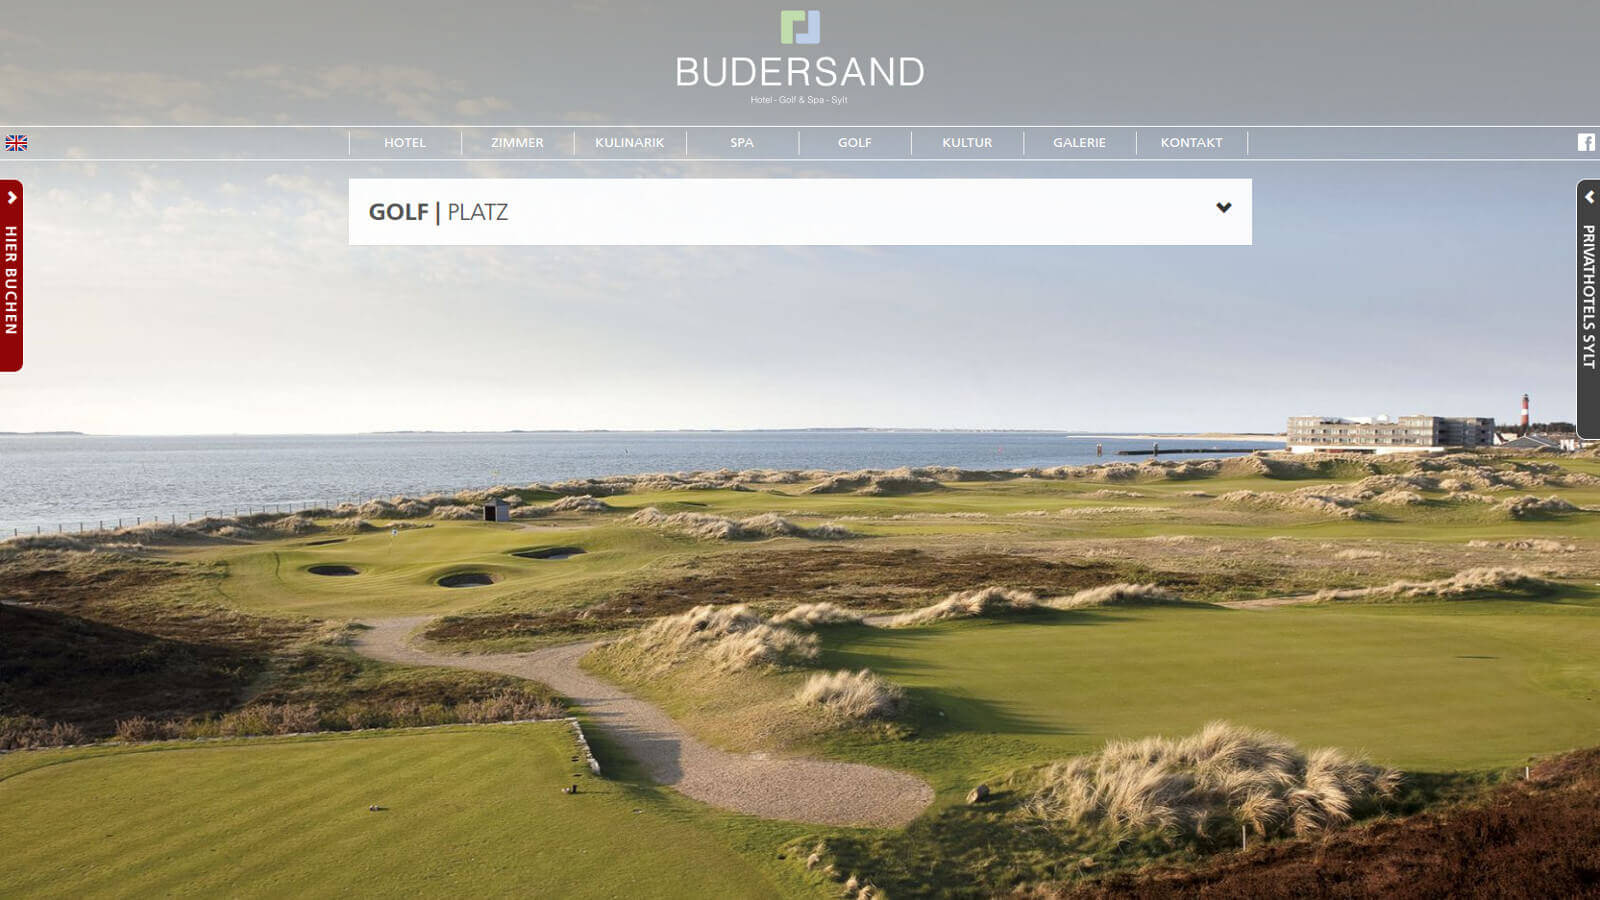 Skjermdump fra hjemmesiden til Golfclub Budersand